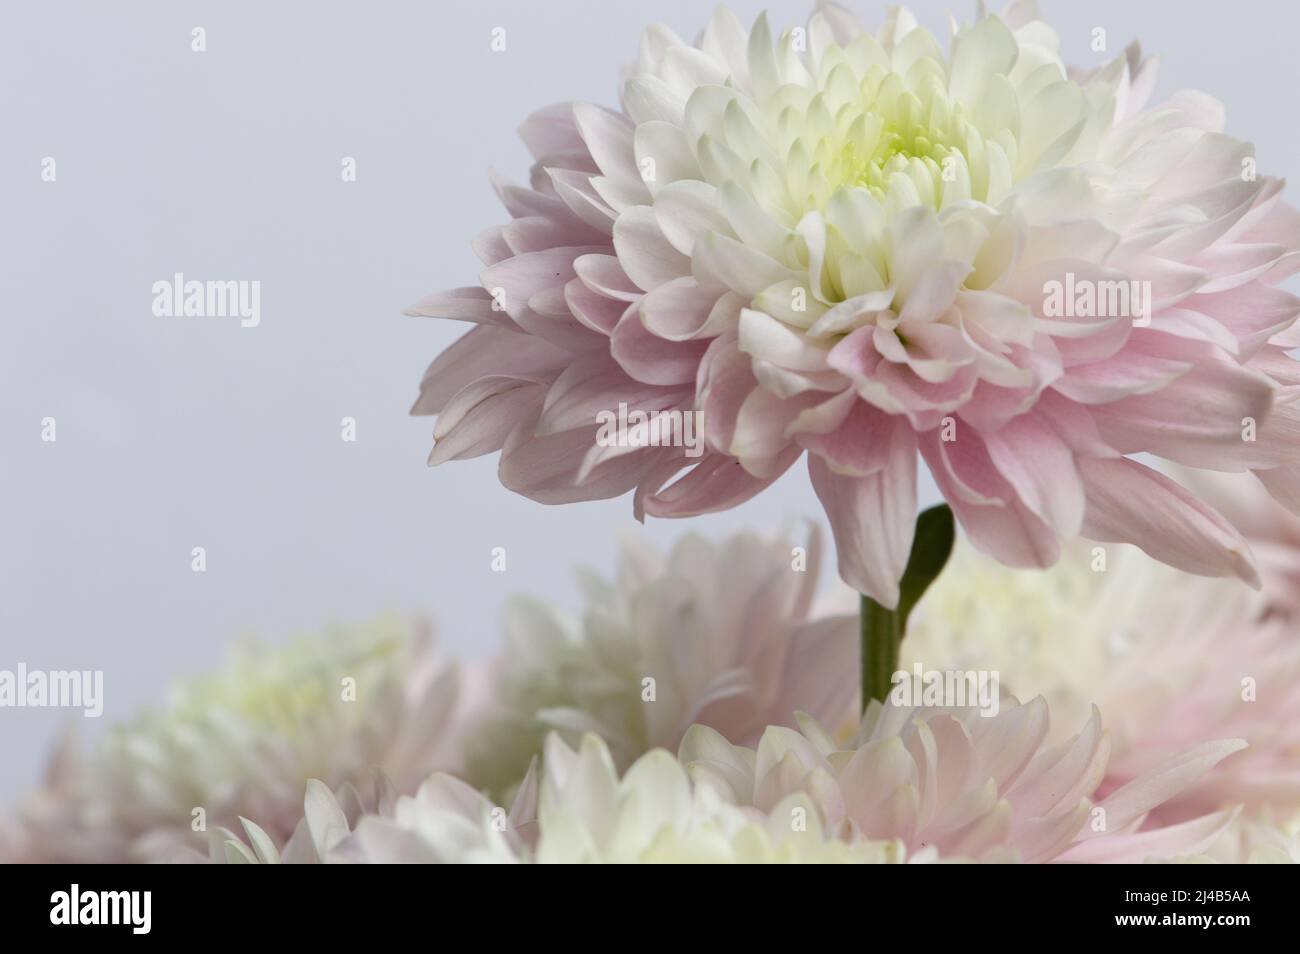 Bel Crisanthemum rosa e bianco si alza più alto del resto dei fiori - macro Foto Stock